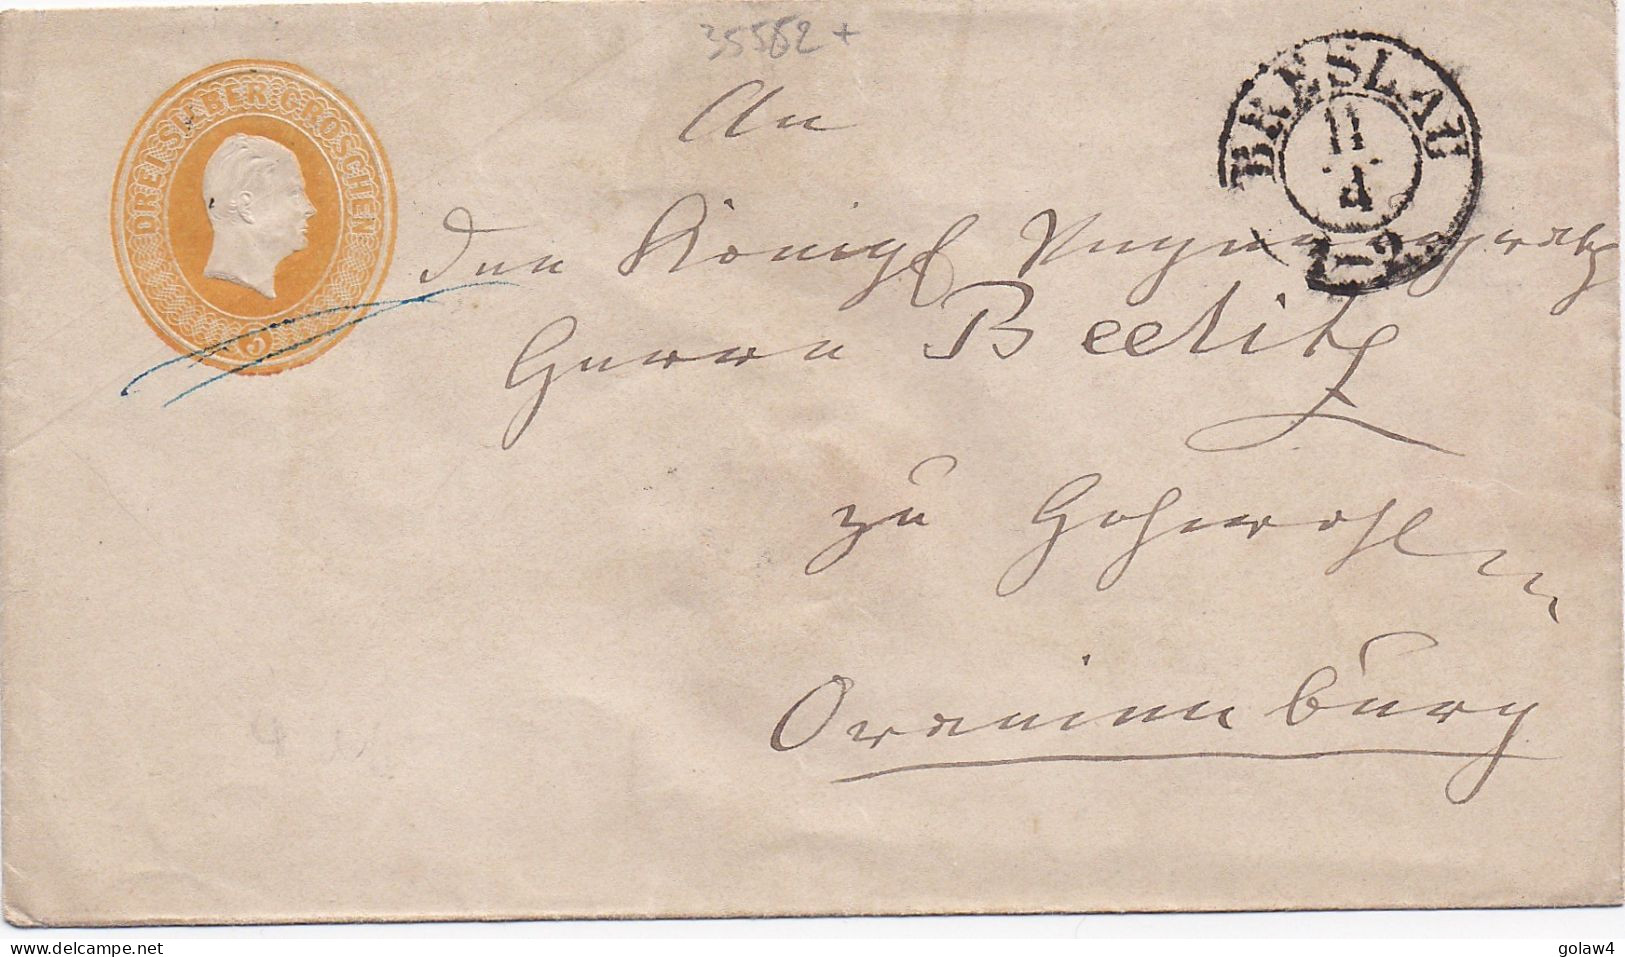 35562# PRUSSE ENTIER POSTAL ENVELOPPE 3 DREI SILBER GROSCHEN PREUSSEN BRESLAU GANZSACHE STATIONERY - Postal  Stationery